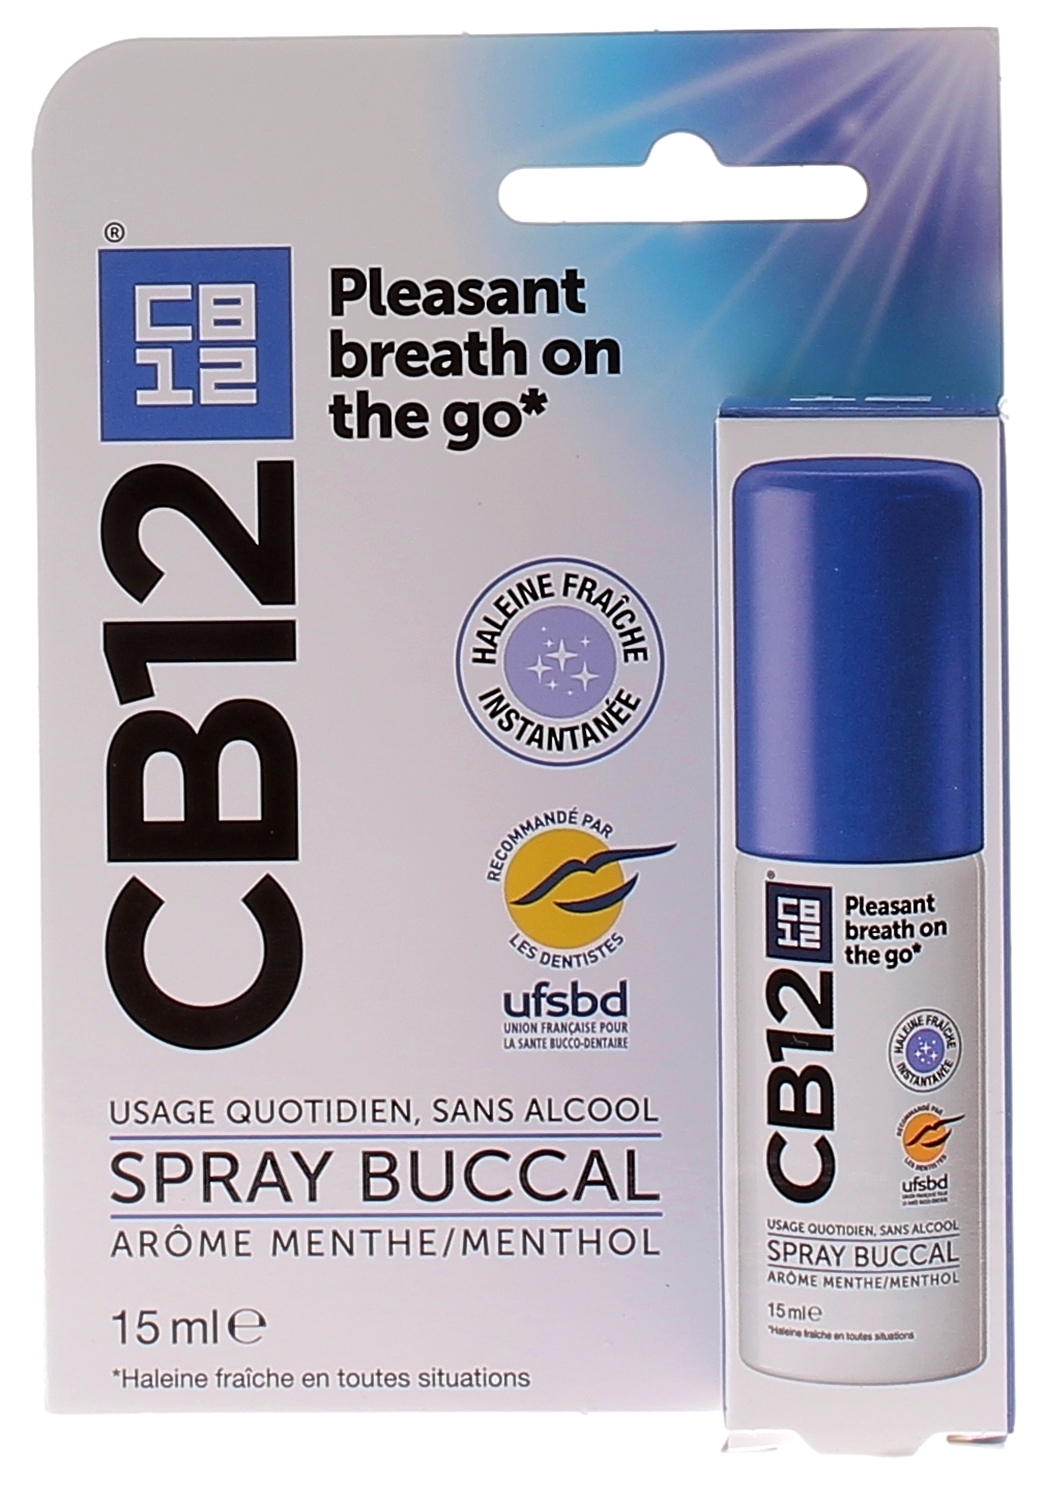 CB12 : Achat de produits CB12 en ligne